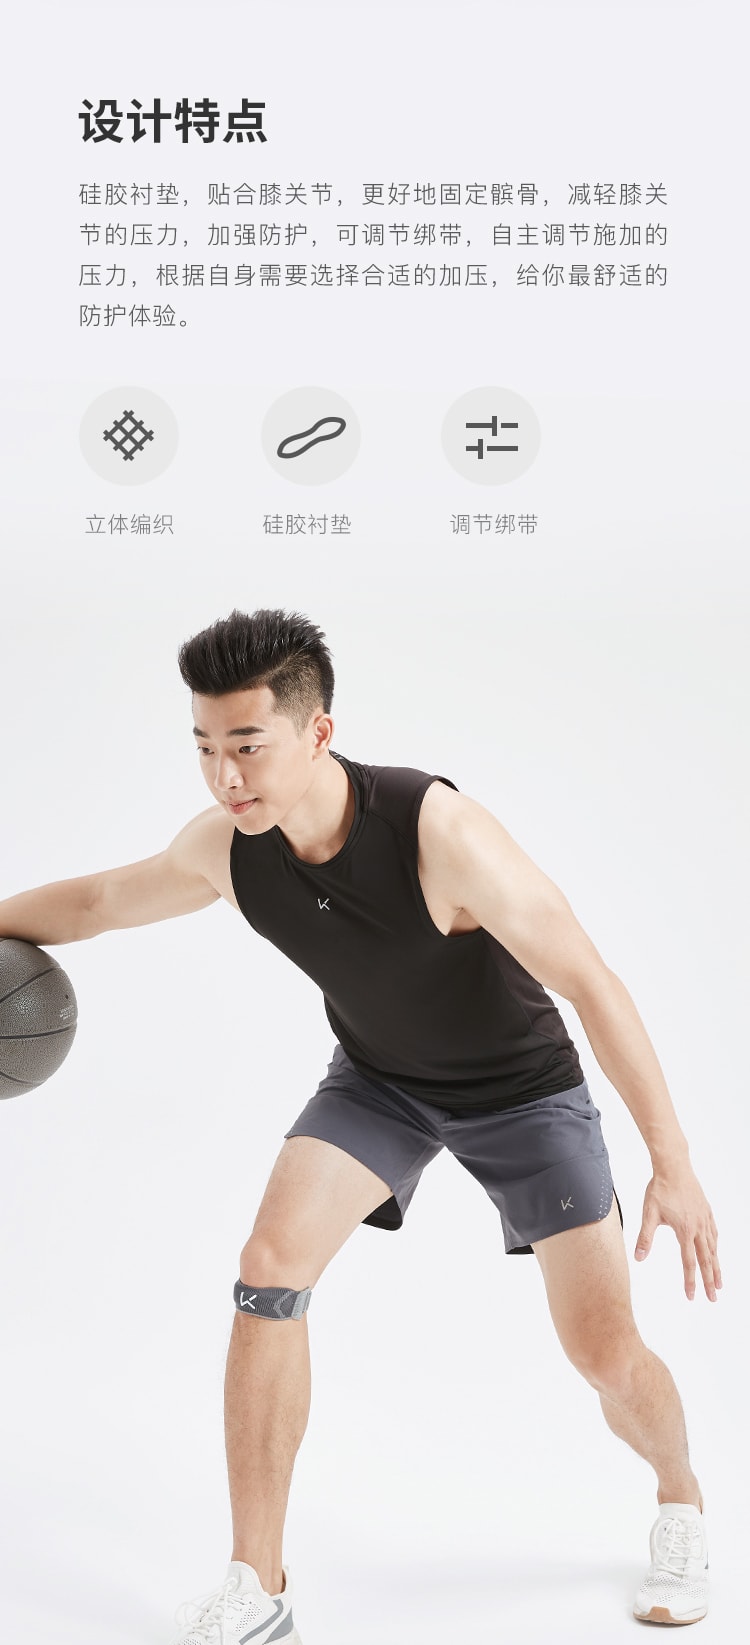 【中國直郵】Keep針織髕骨帶跑步專業保護膝蓋護膝 均碼黑色一裝